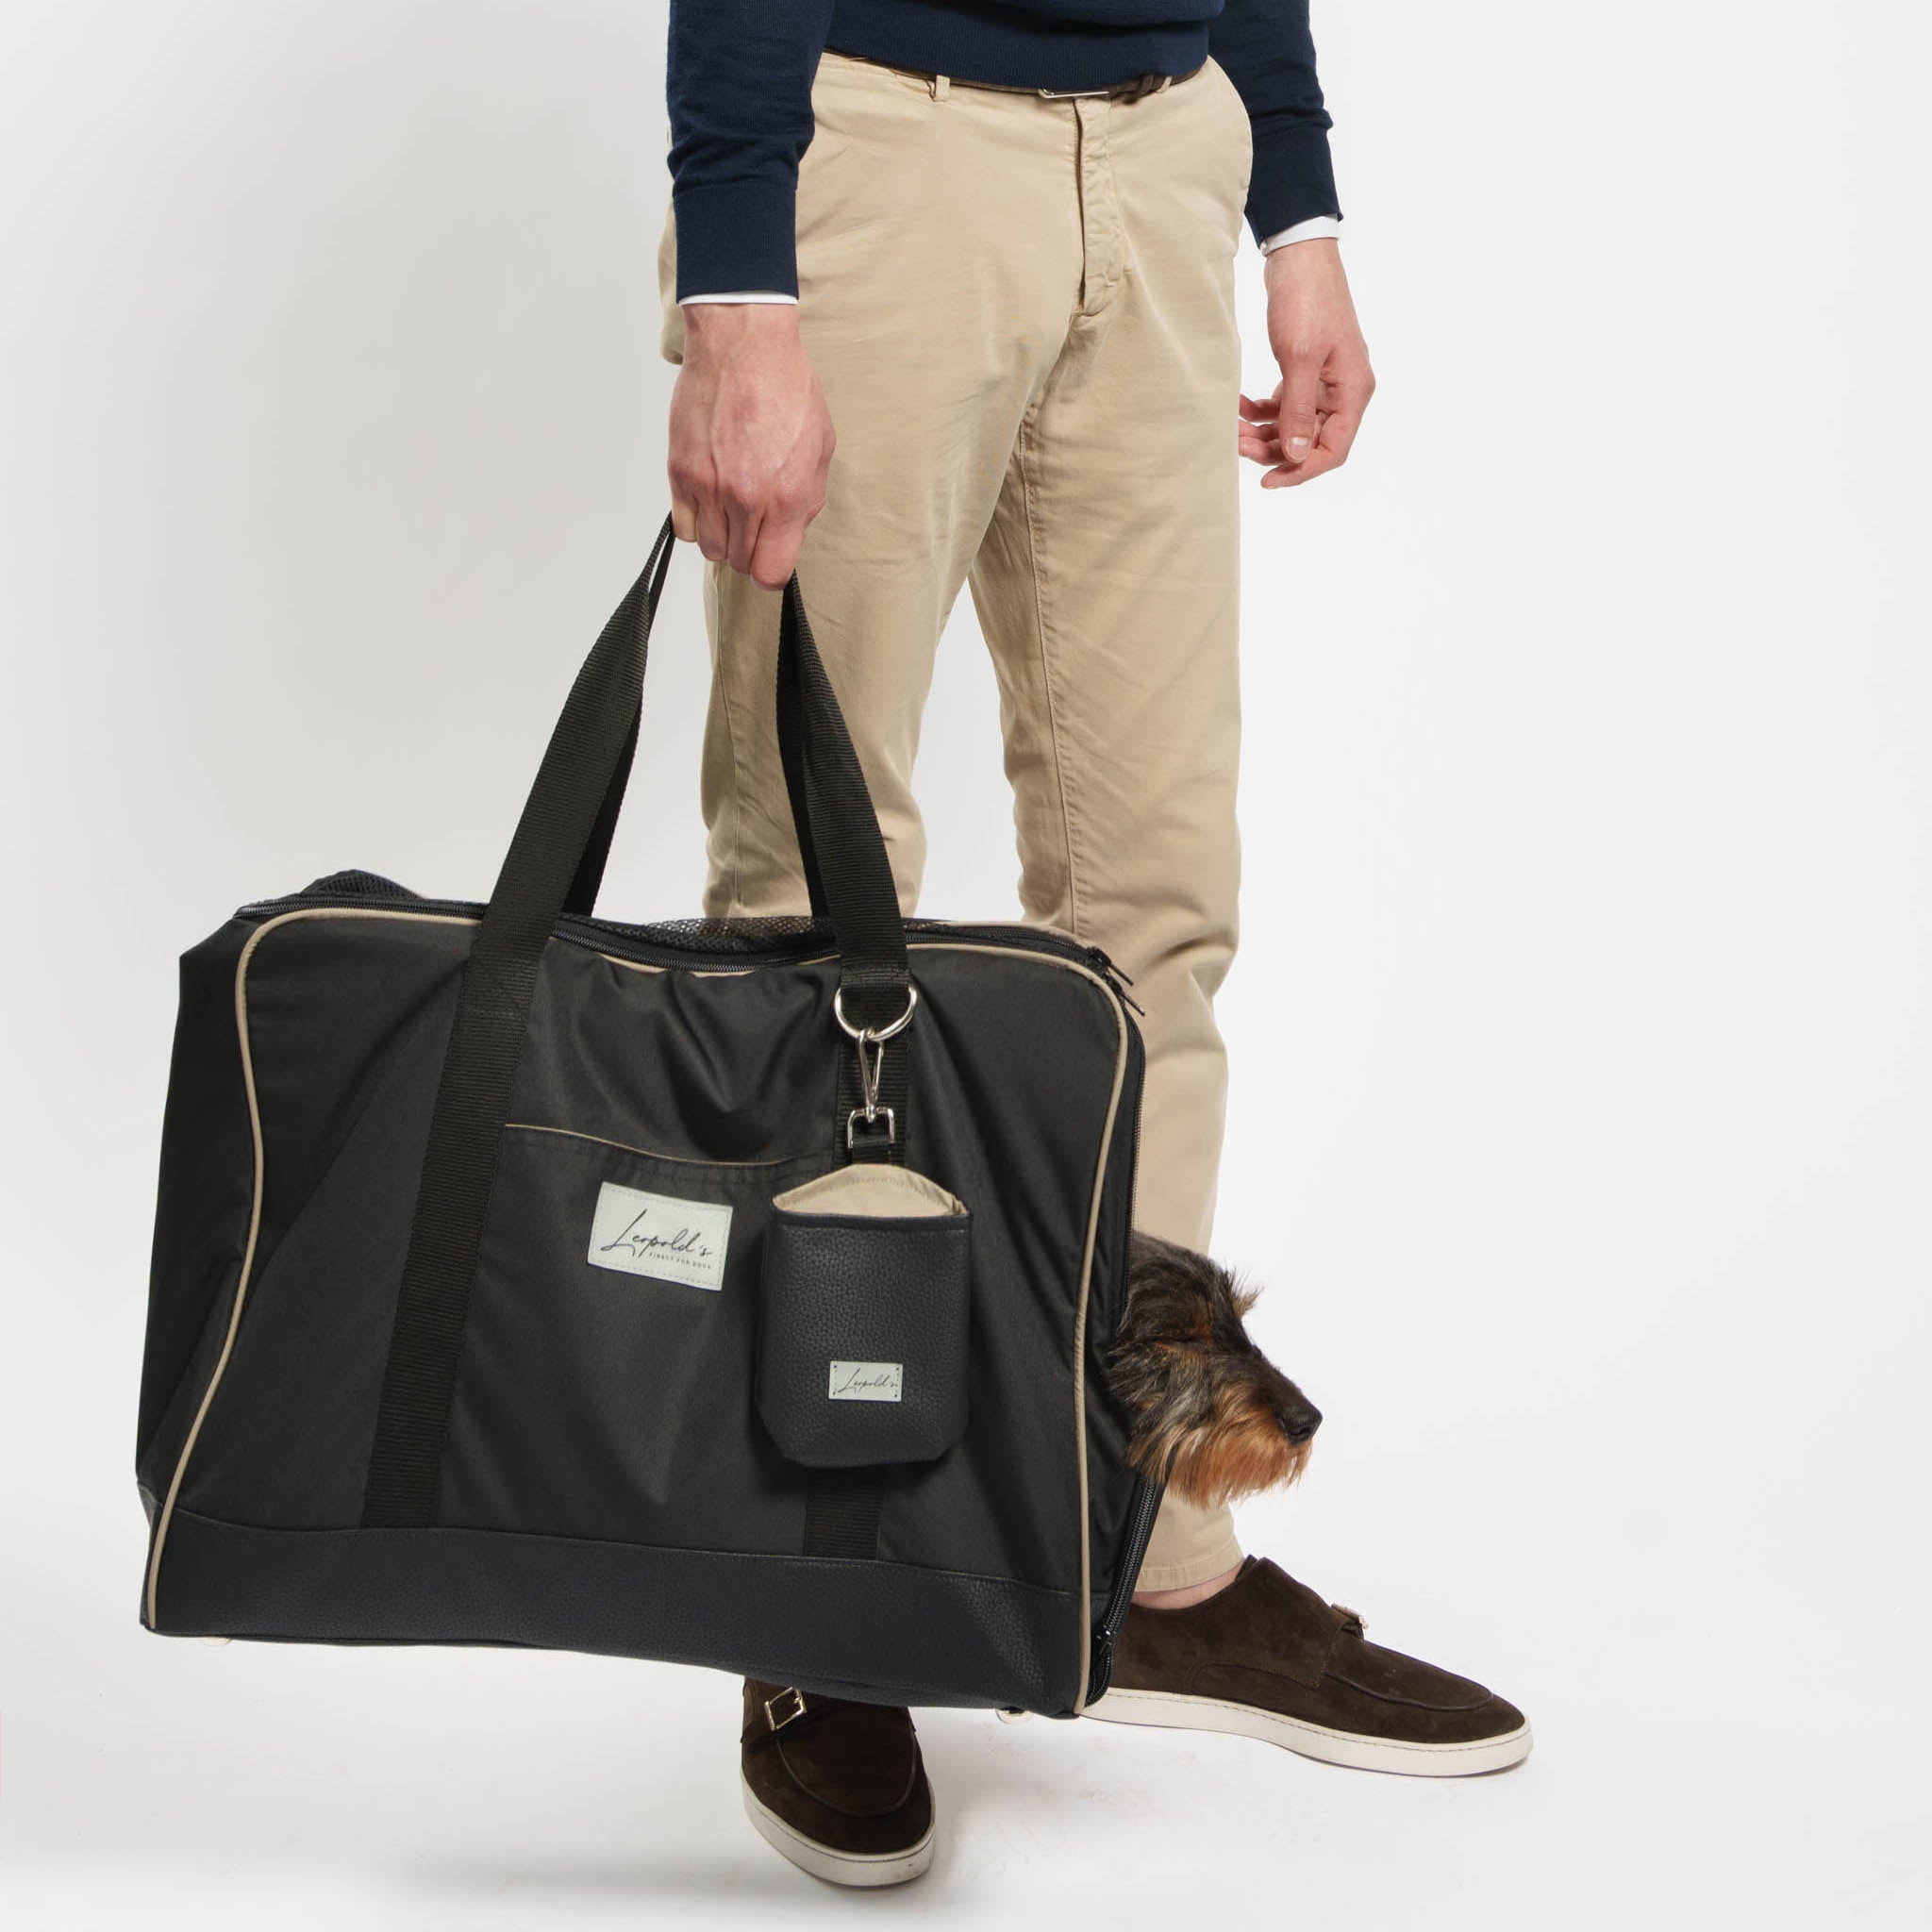 Transporttasche Hund Leopold's     - von Leopold's kaufen bei leopolds-finest